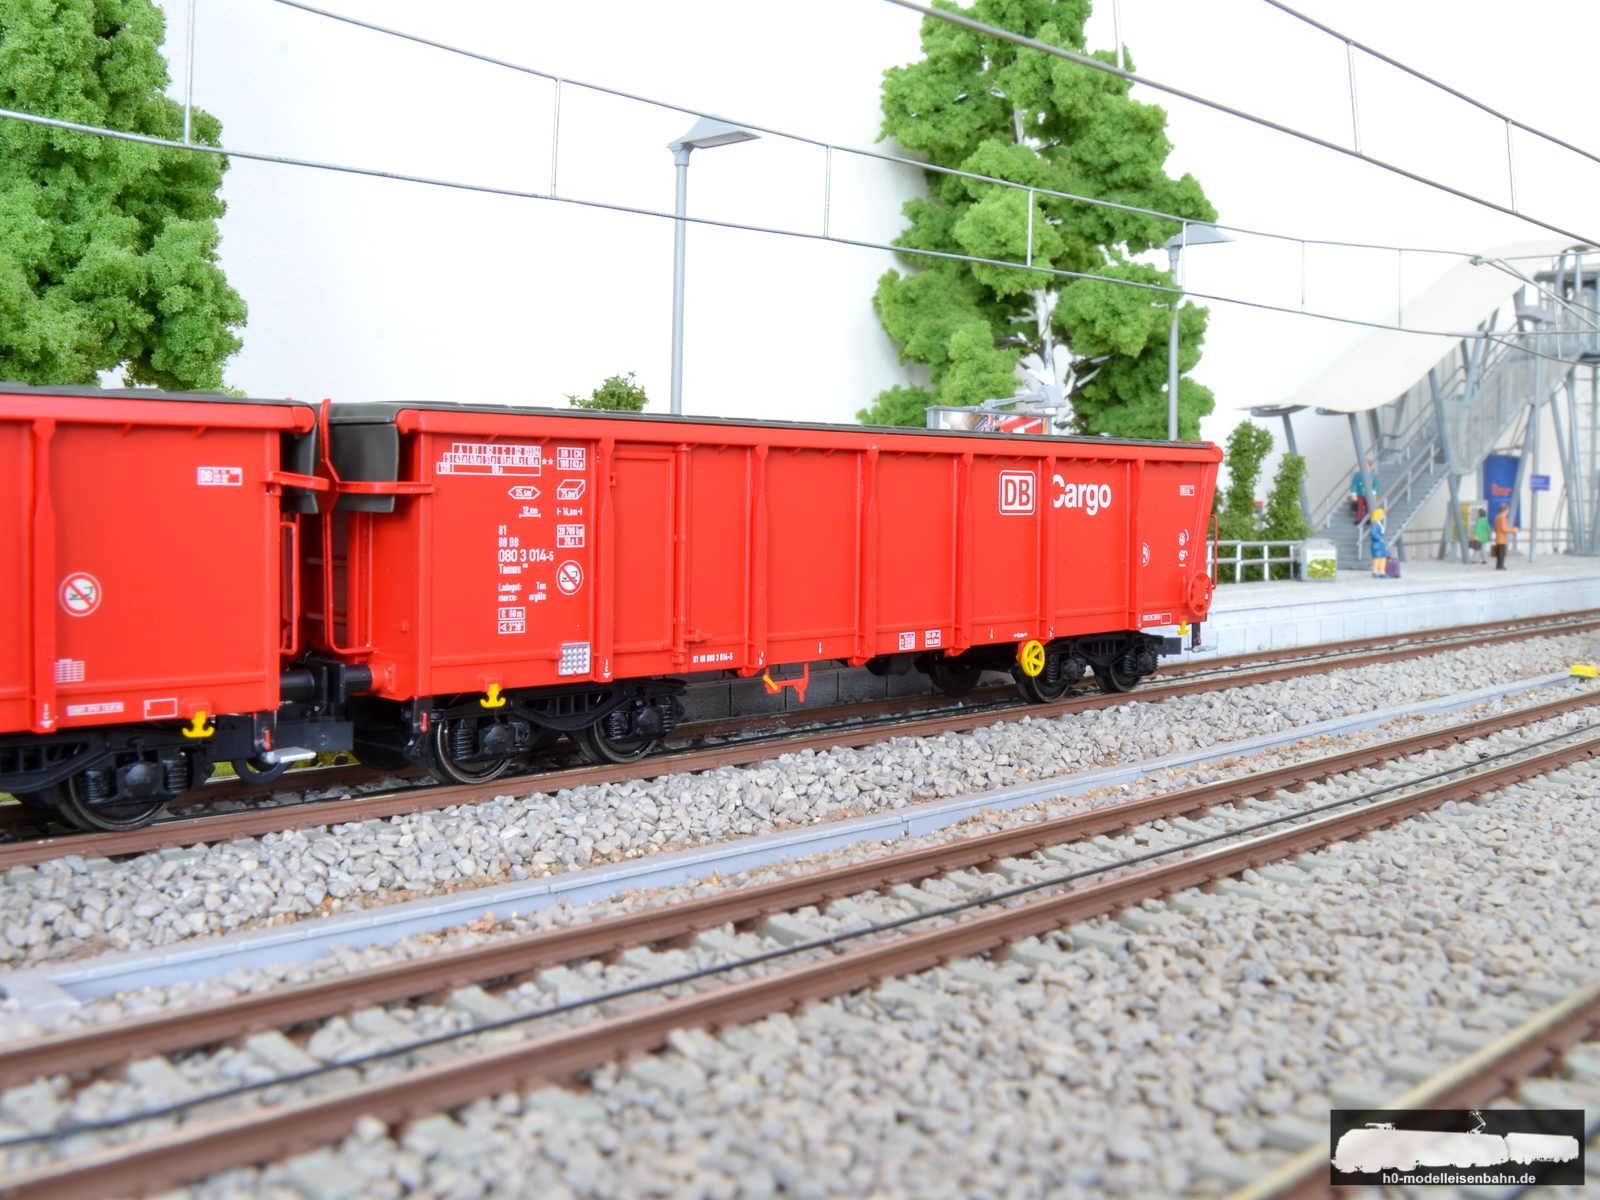 H0-Modelle | h0-modelleisenbahn.de - A.C.M.E. - Güterwagen